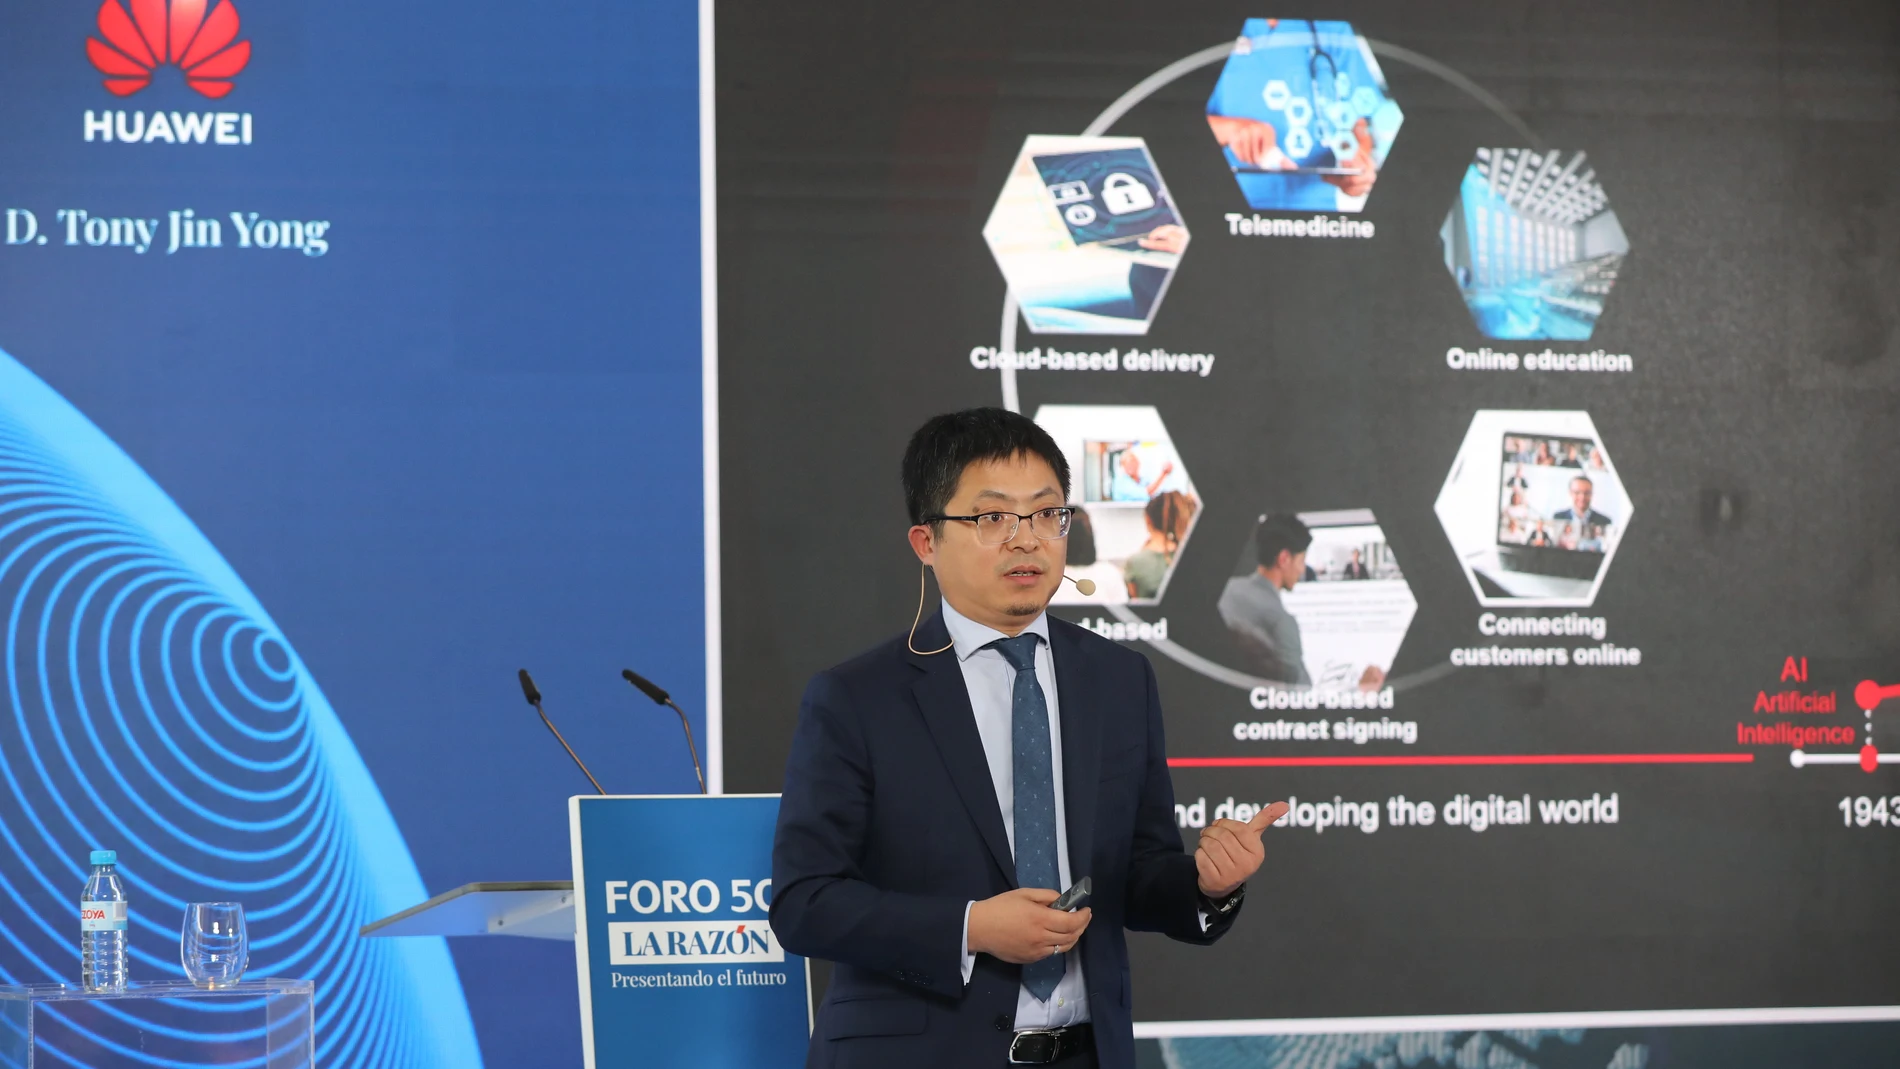 Tony Jin Yong, CEO de Huawei España, durante su intervención en el Foro 5G organizado por LA RAZÓN